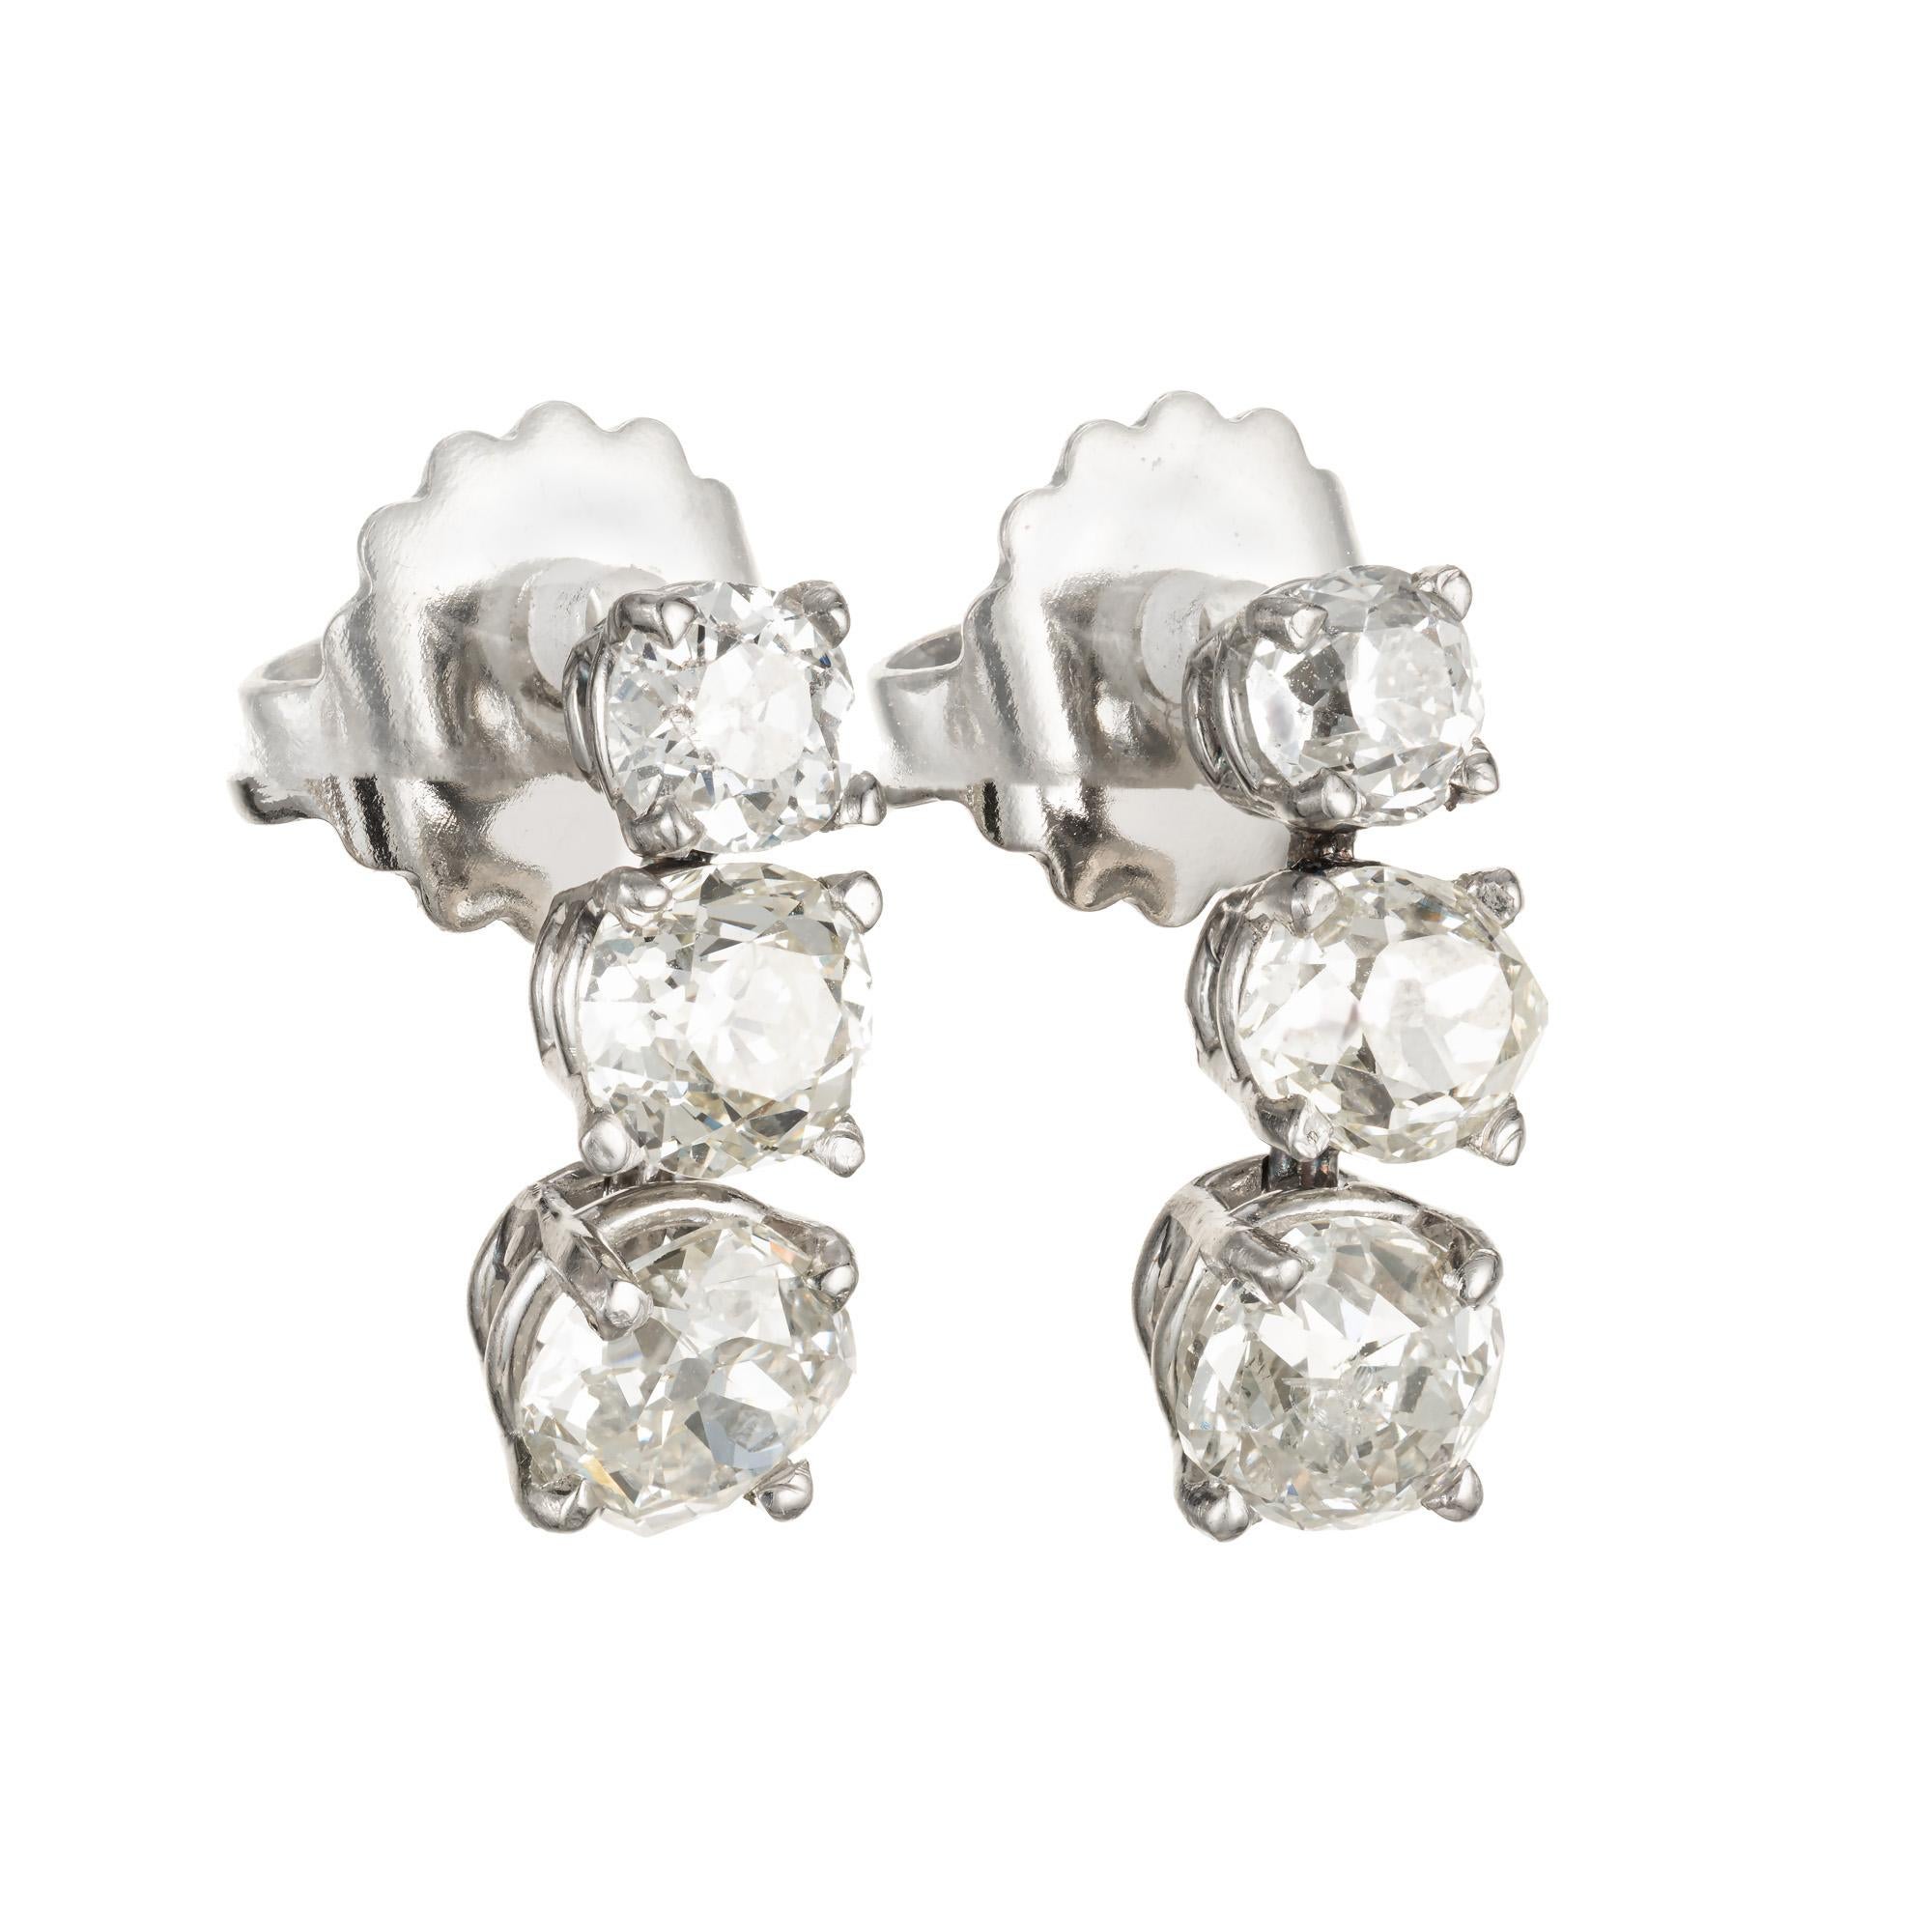 Handgefertigte Dreifach-Diamant-Ohrringe mit altem Minenschliff. Um 1880. Originelle unregelmäßig geformte Diamanten im Altminenschliff in einer einfachen flexiblen 4-Zacken-Korbfassung. Die beiden oberen Diamanten sind ca.  .95cts insgesamt. Die 2